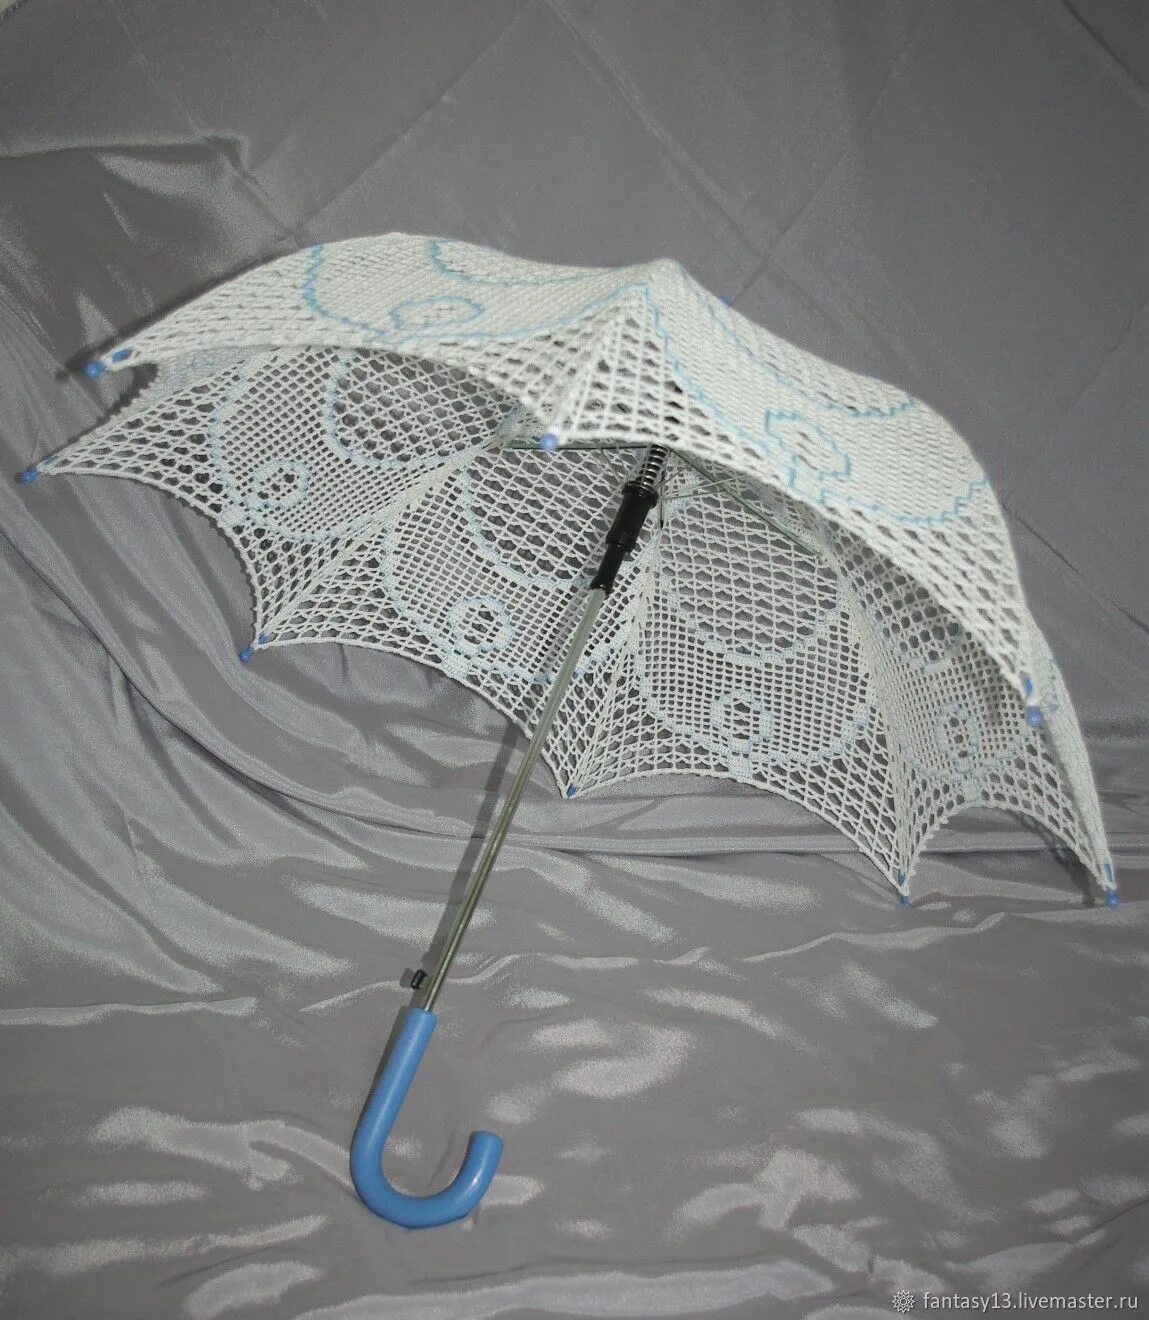 Зонт кружево белый d65см HS-10. Ажурный зонт от солнца. Кружевной зонт. Зонтик от солнца женский. Зонт от солнца кружевной